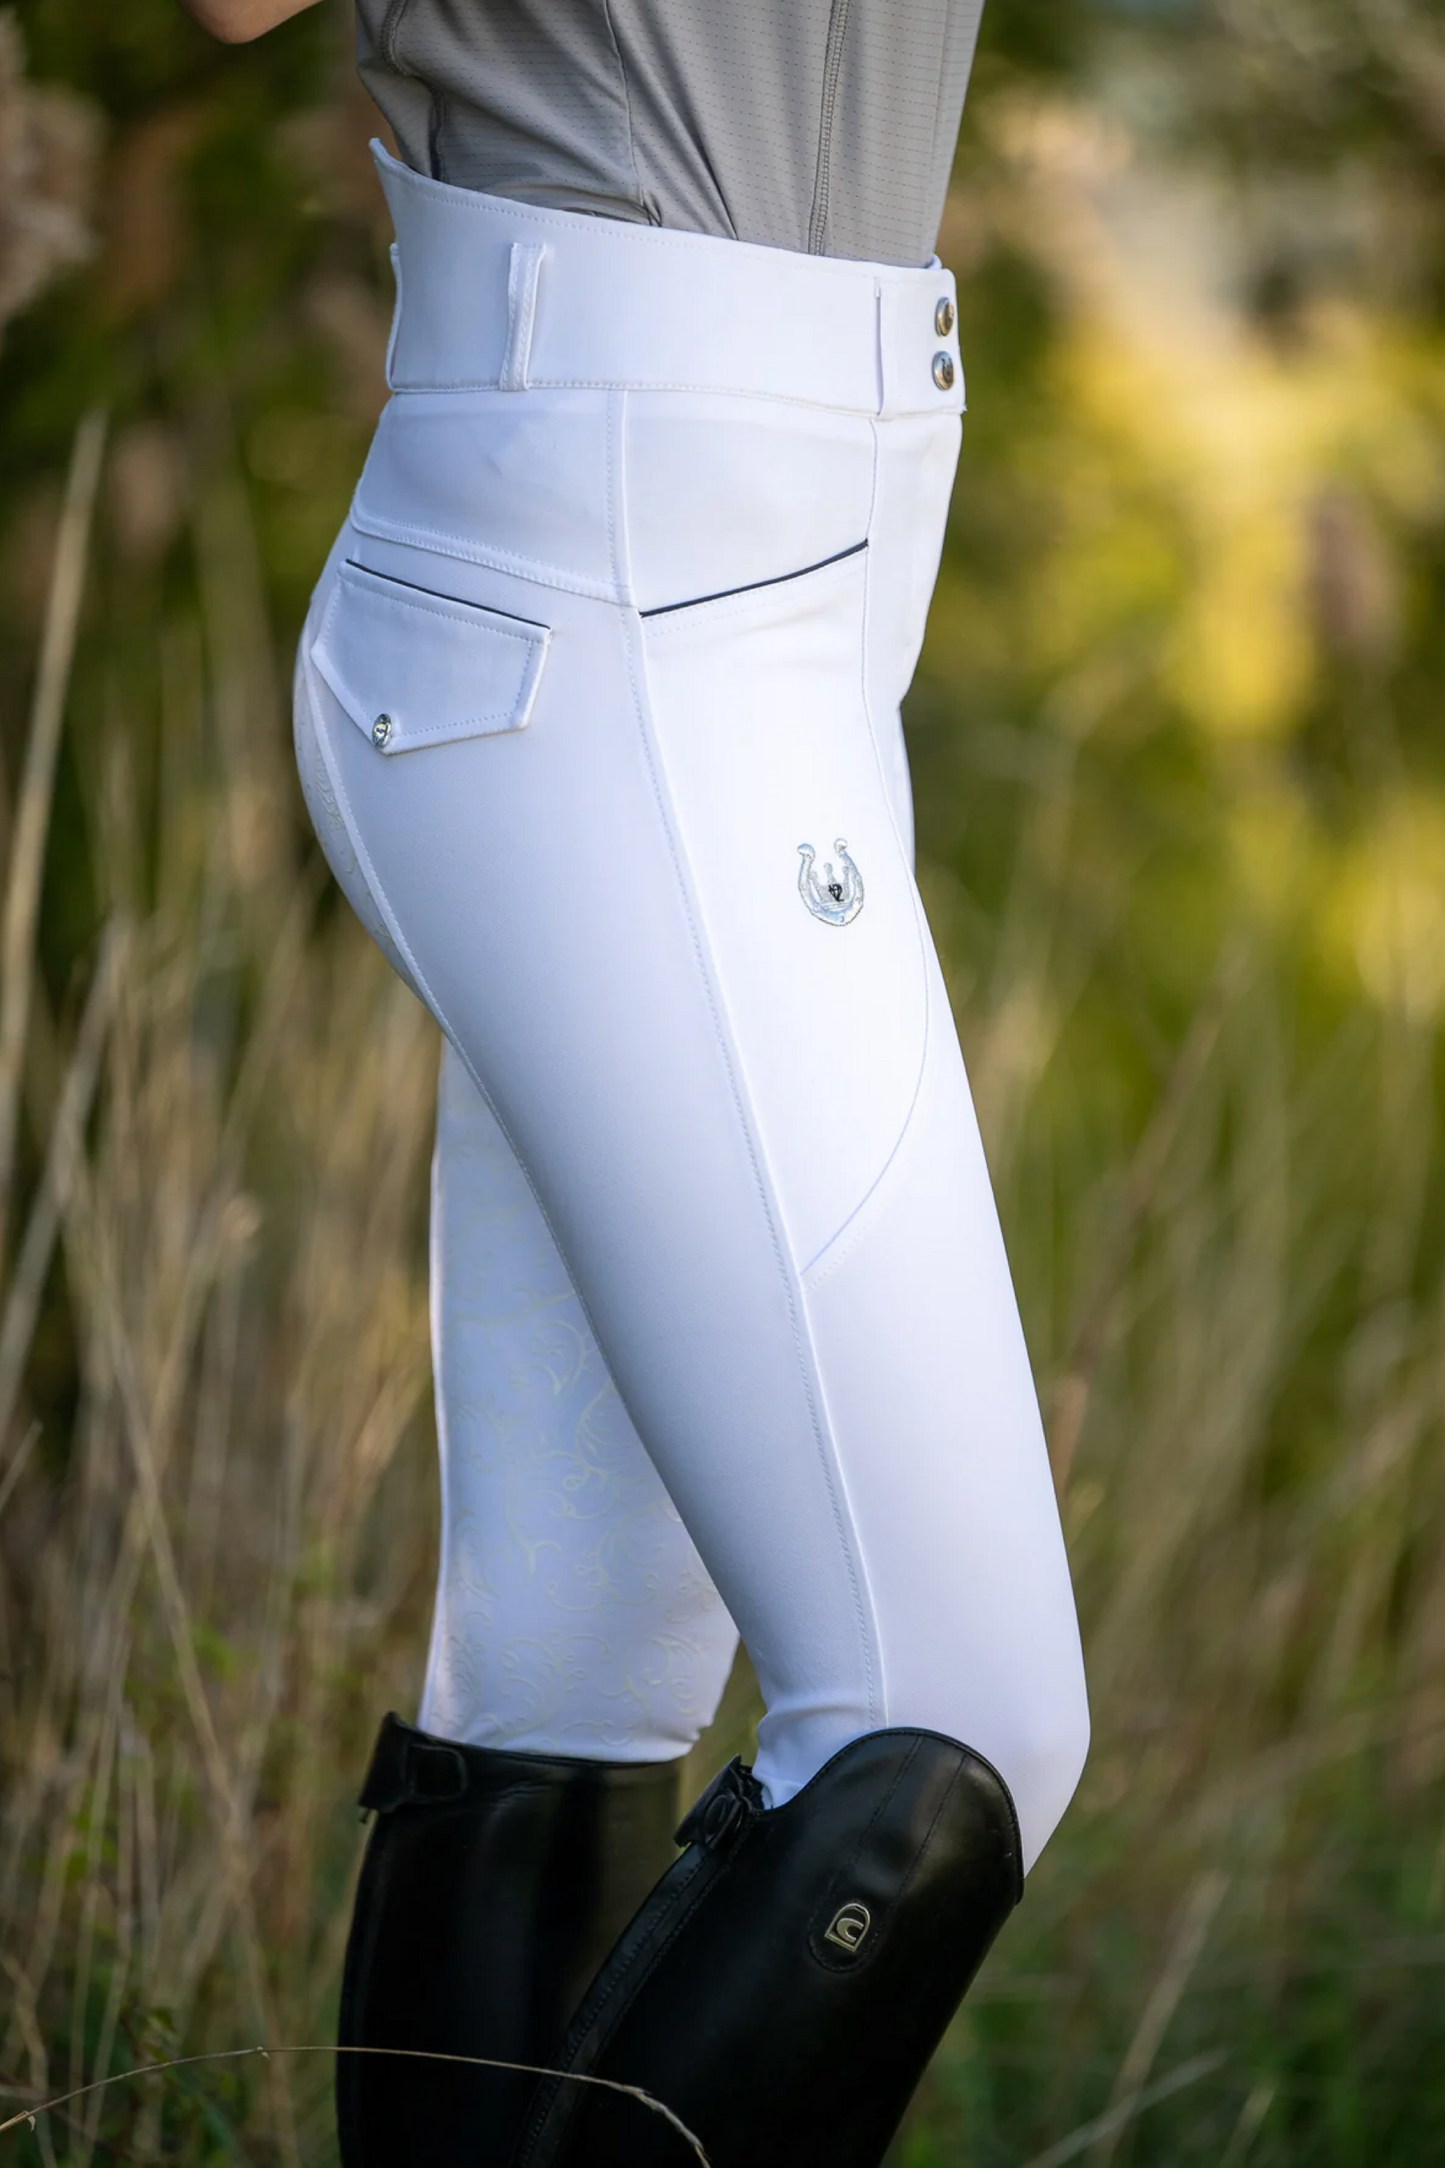 Pantalon compétition équitation blanc femme Leveza Dalhousie